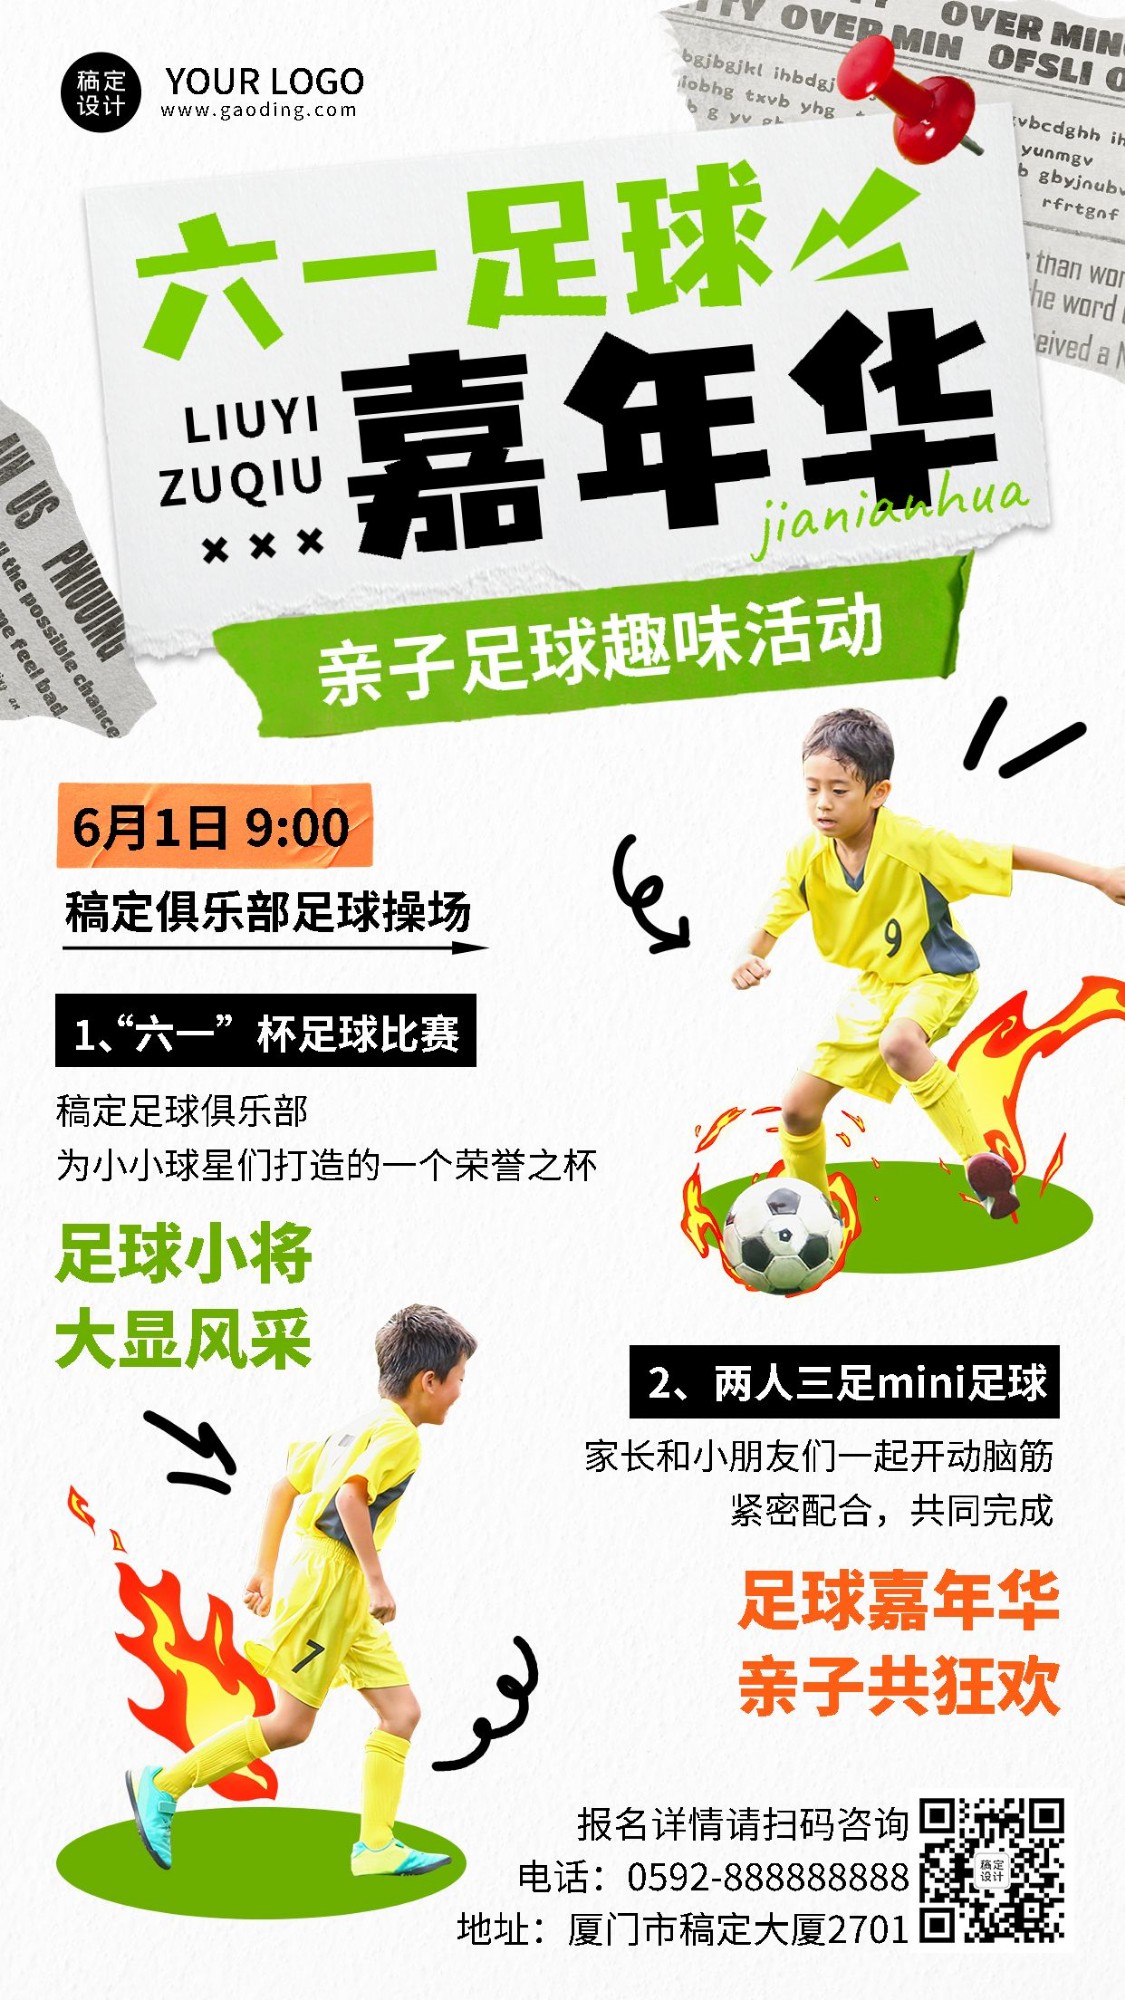 六一儿童节教育机构亲子活动足球嘉年华活动宣传手机海报预览效果